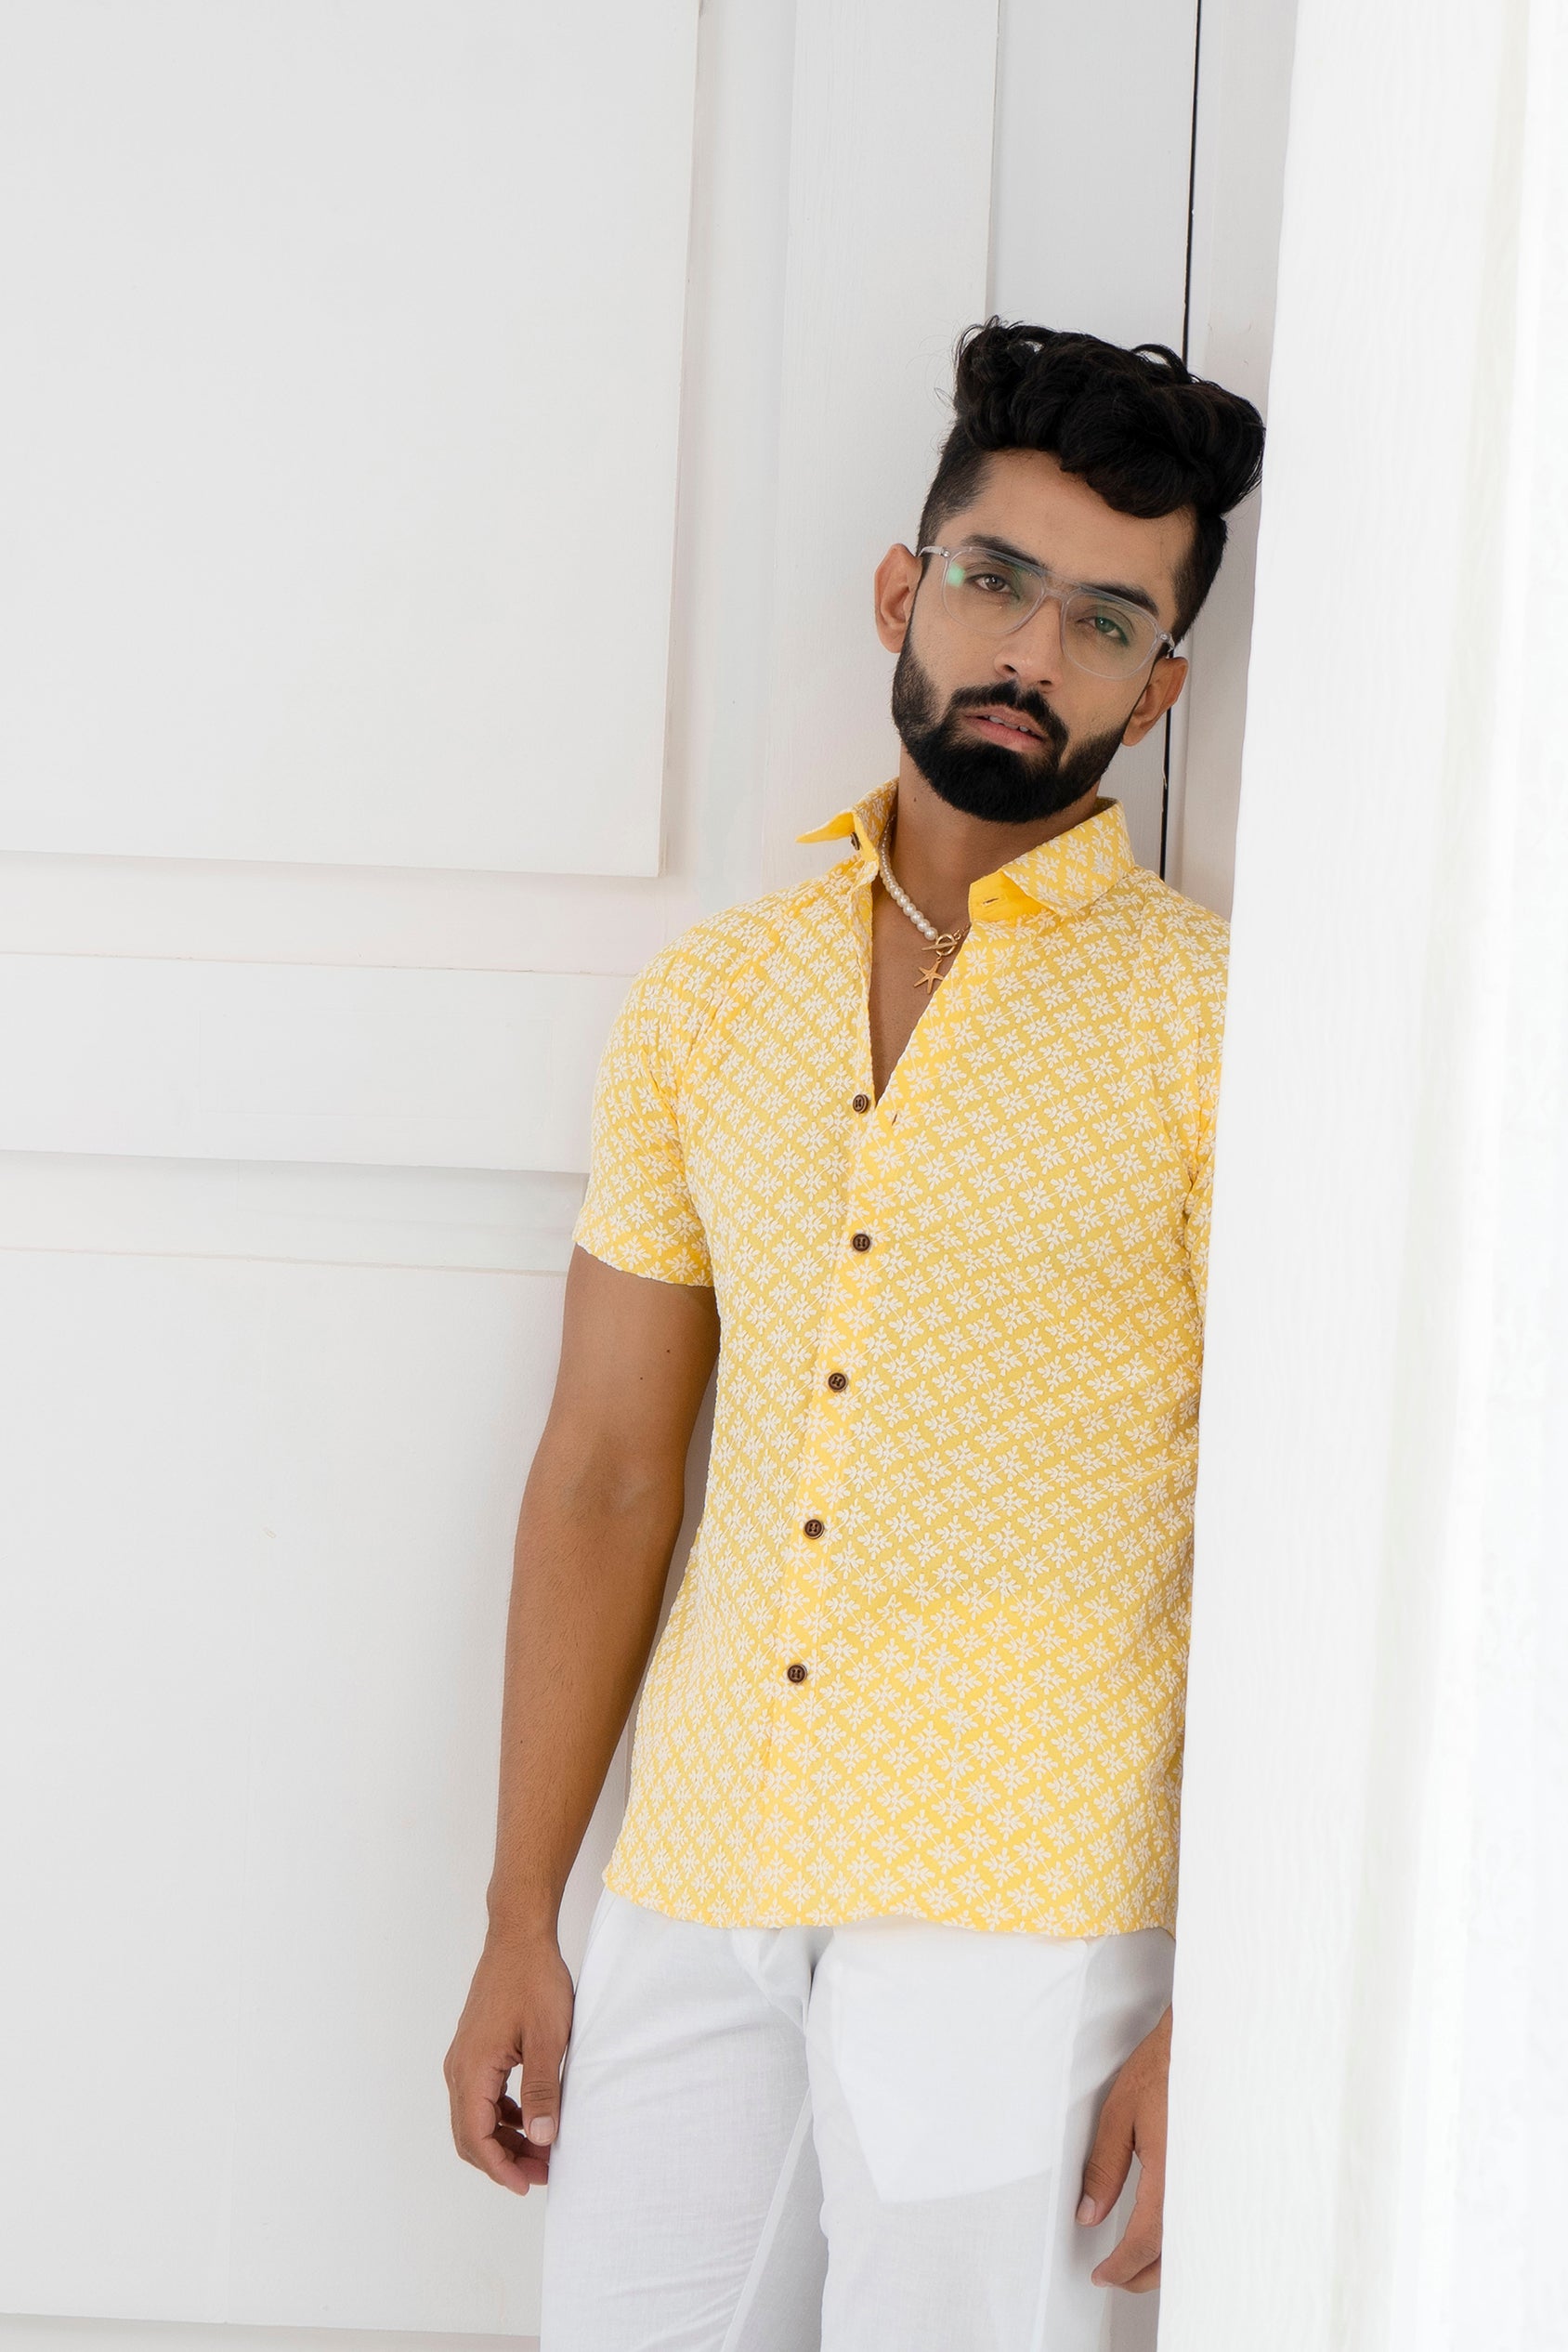 Firangi Yarn Super Soft Half Sleeves Chikankari schiffli Embroided Men's Shirt Yellow